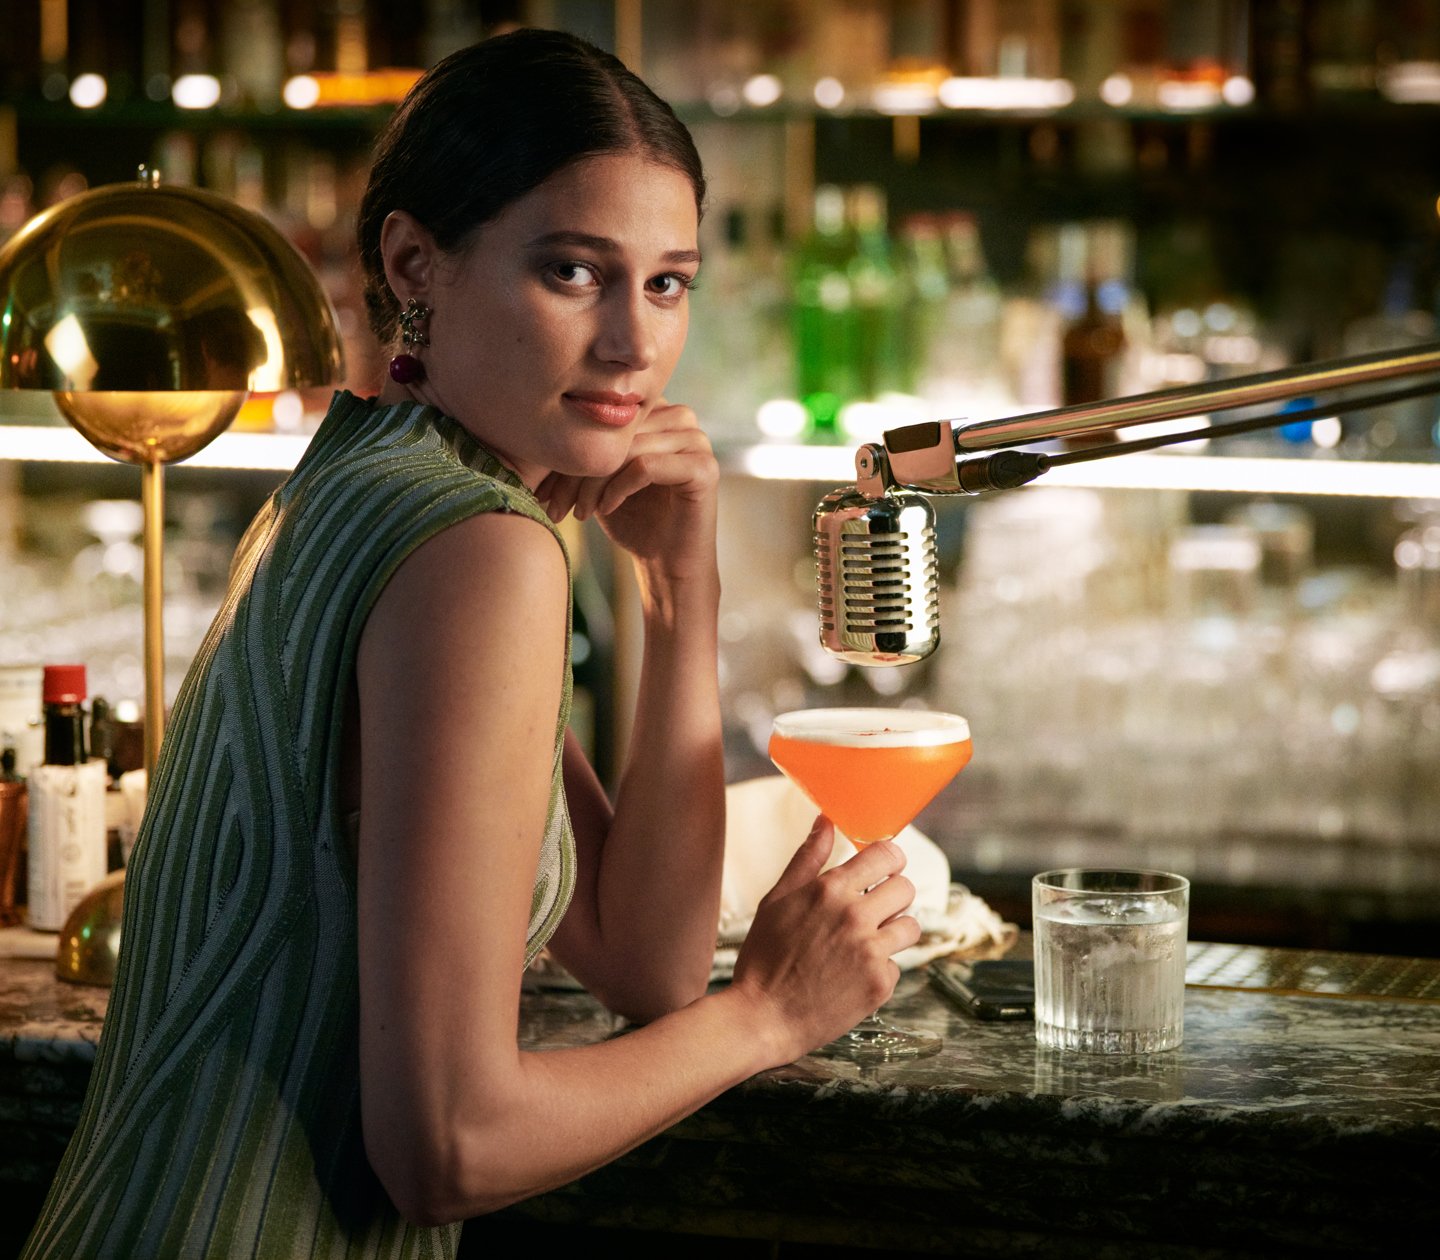 Kvinna i grön klänning som sitter i bar med orange drink i handen och mikrofon ovanför